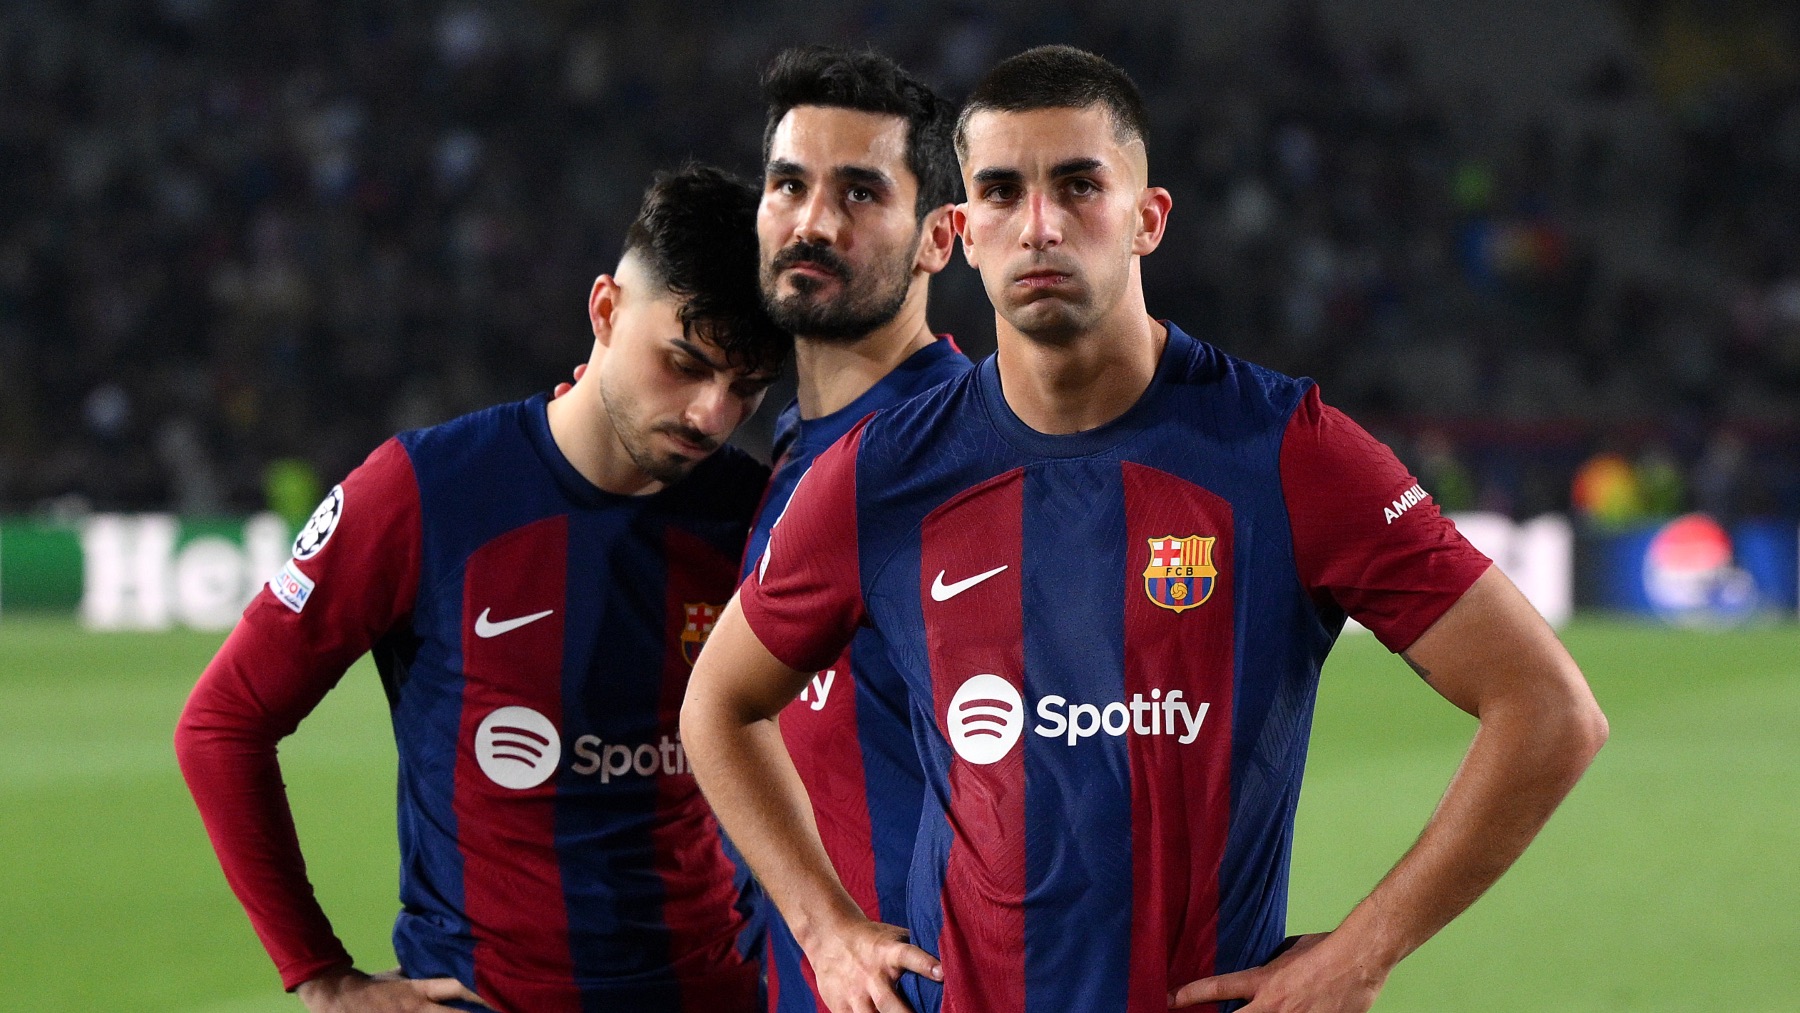 Pedri, Gündogan y Ferran, tras la eliminación del Barcelona. (Getty)